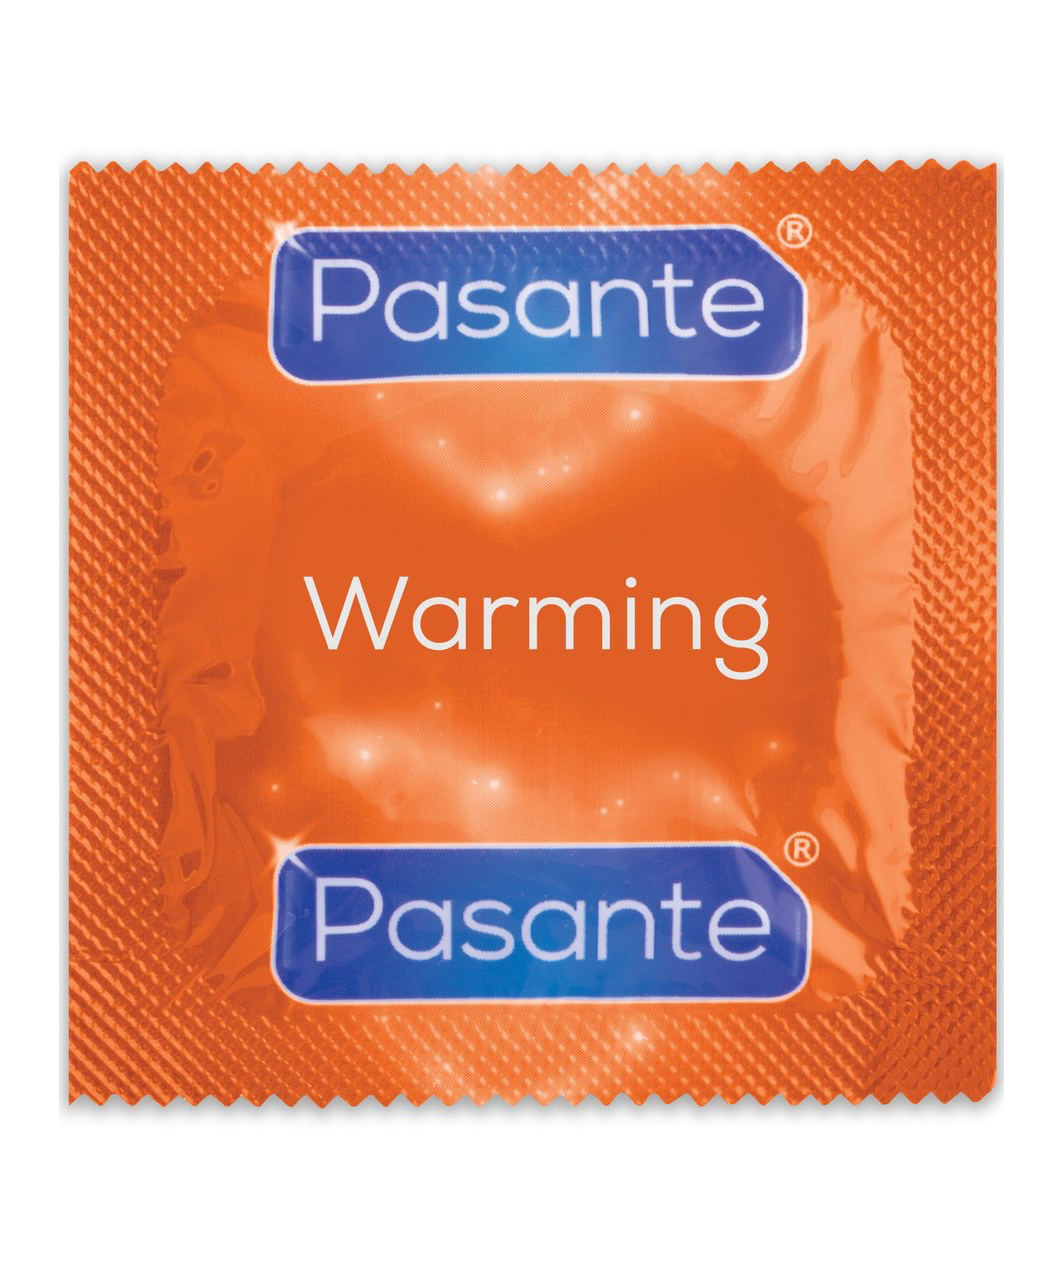 Pasante Climax condoms (12 pcs)